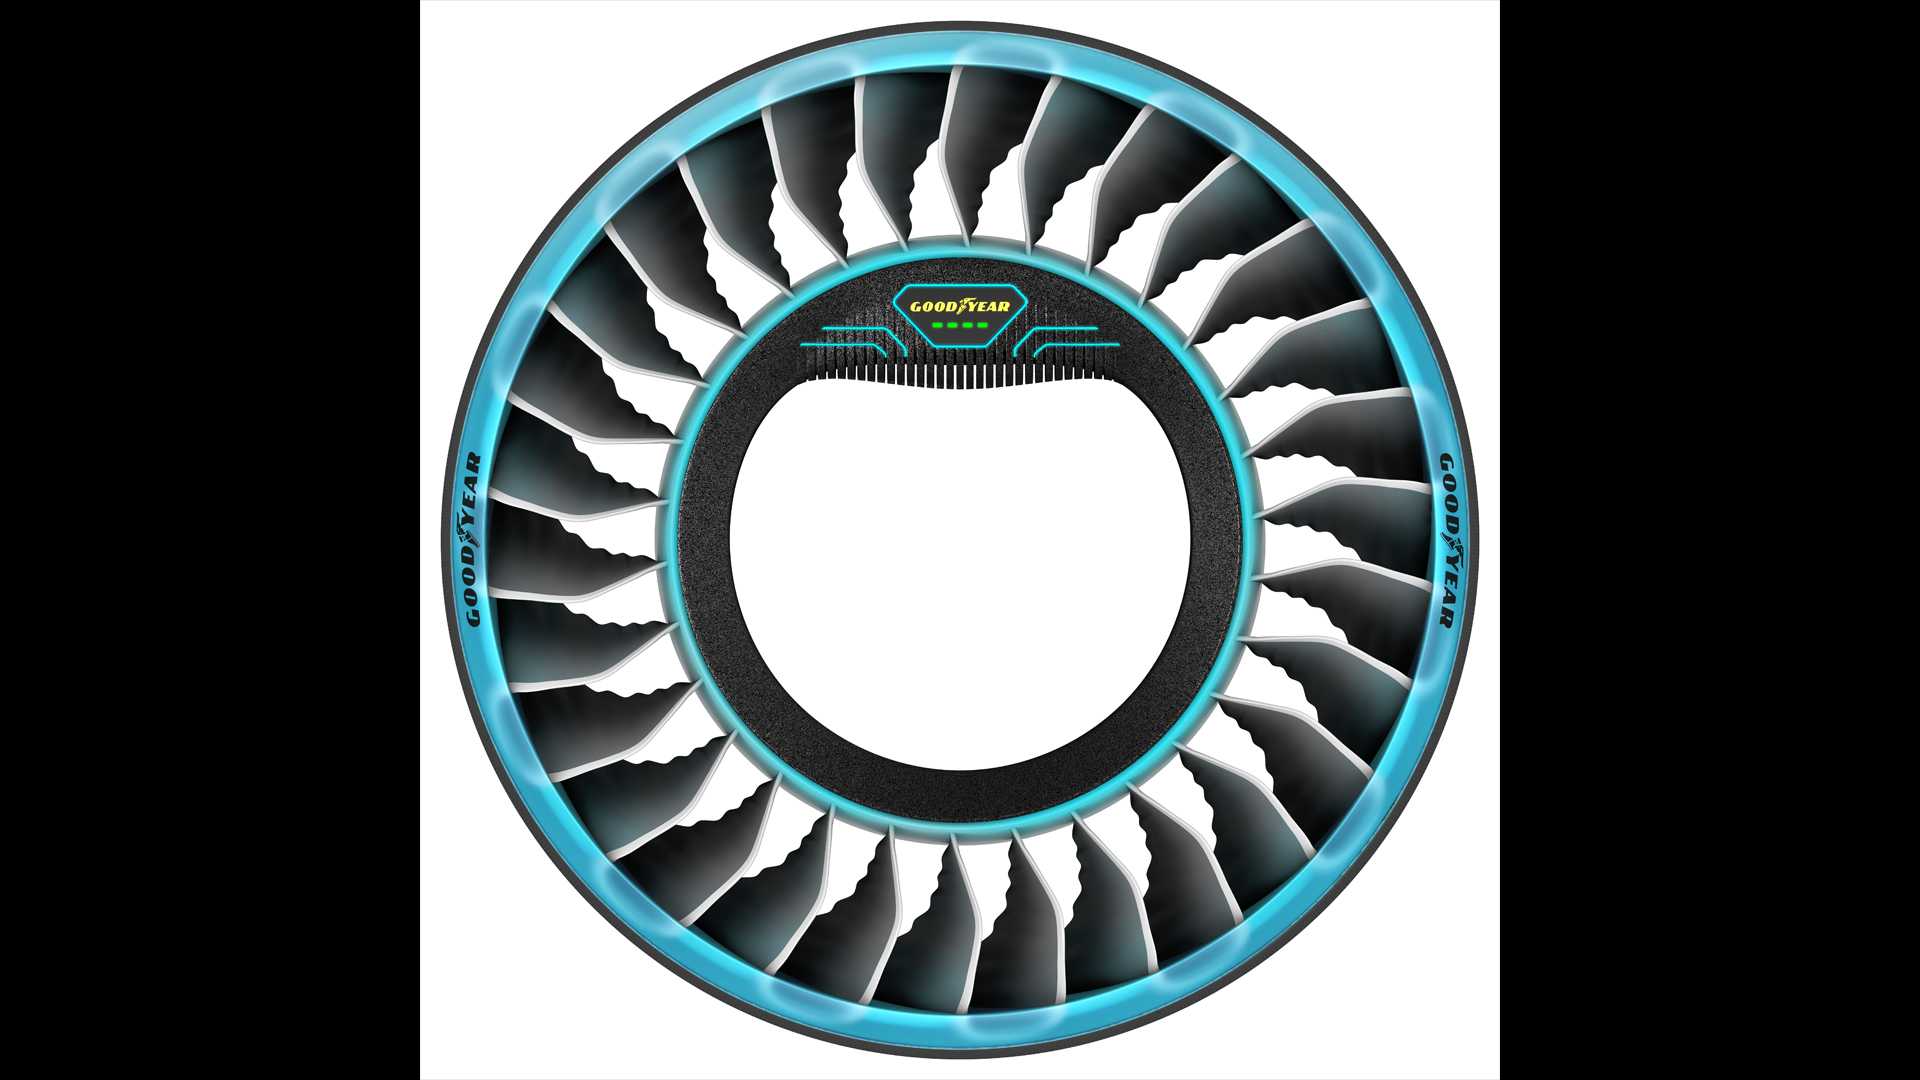 空中飞行推进器 固特异发布AERO概念轮胎